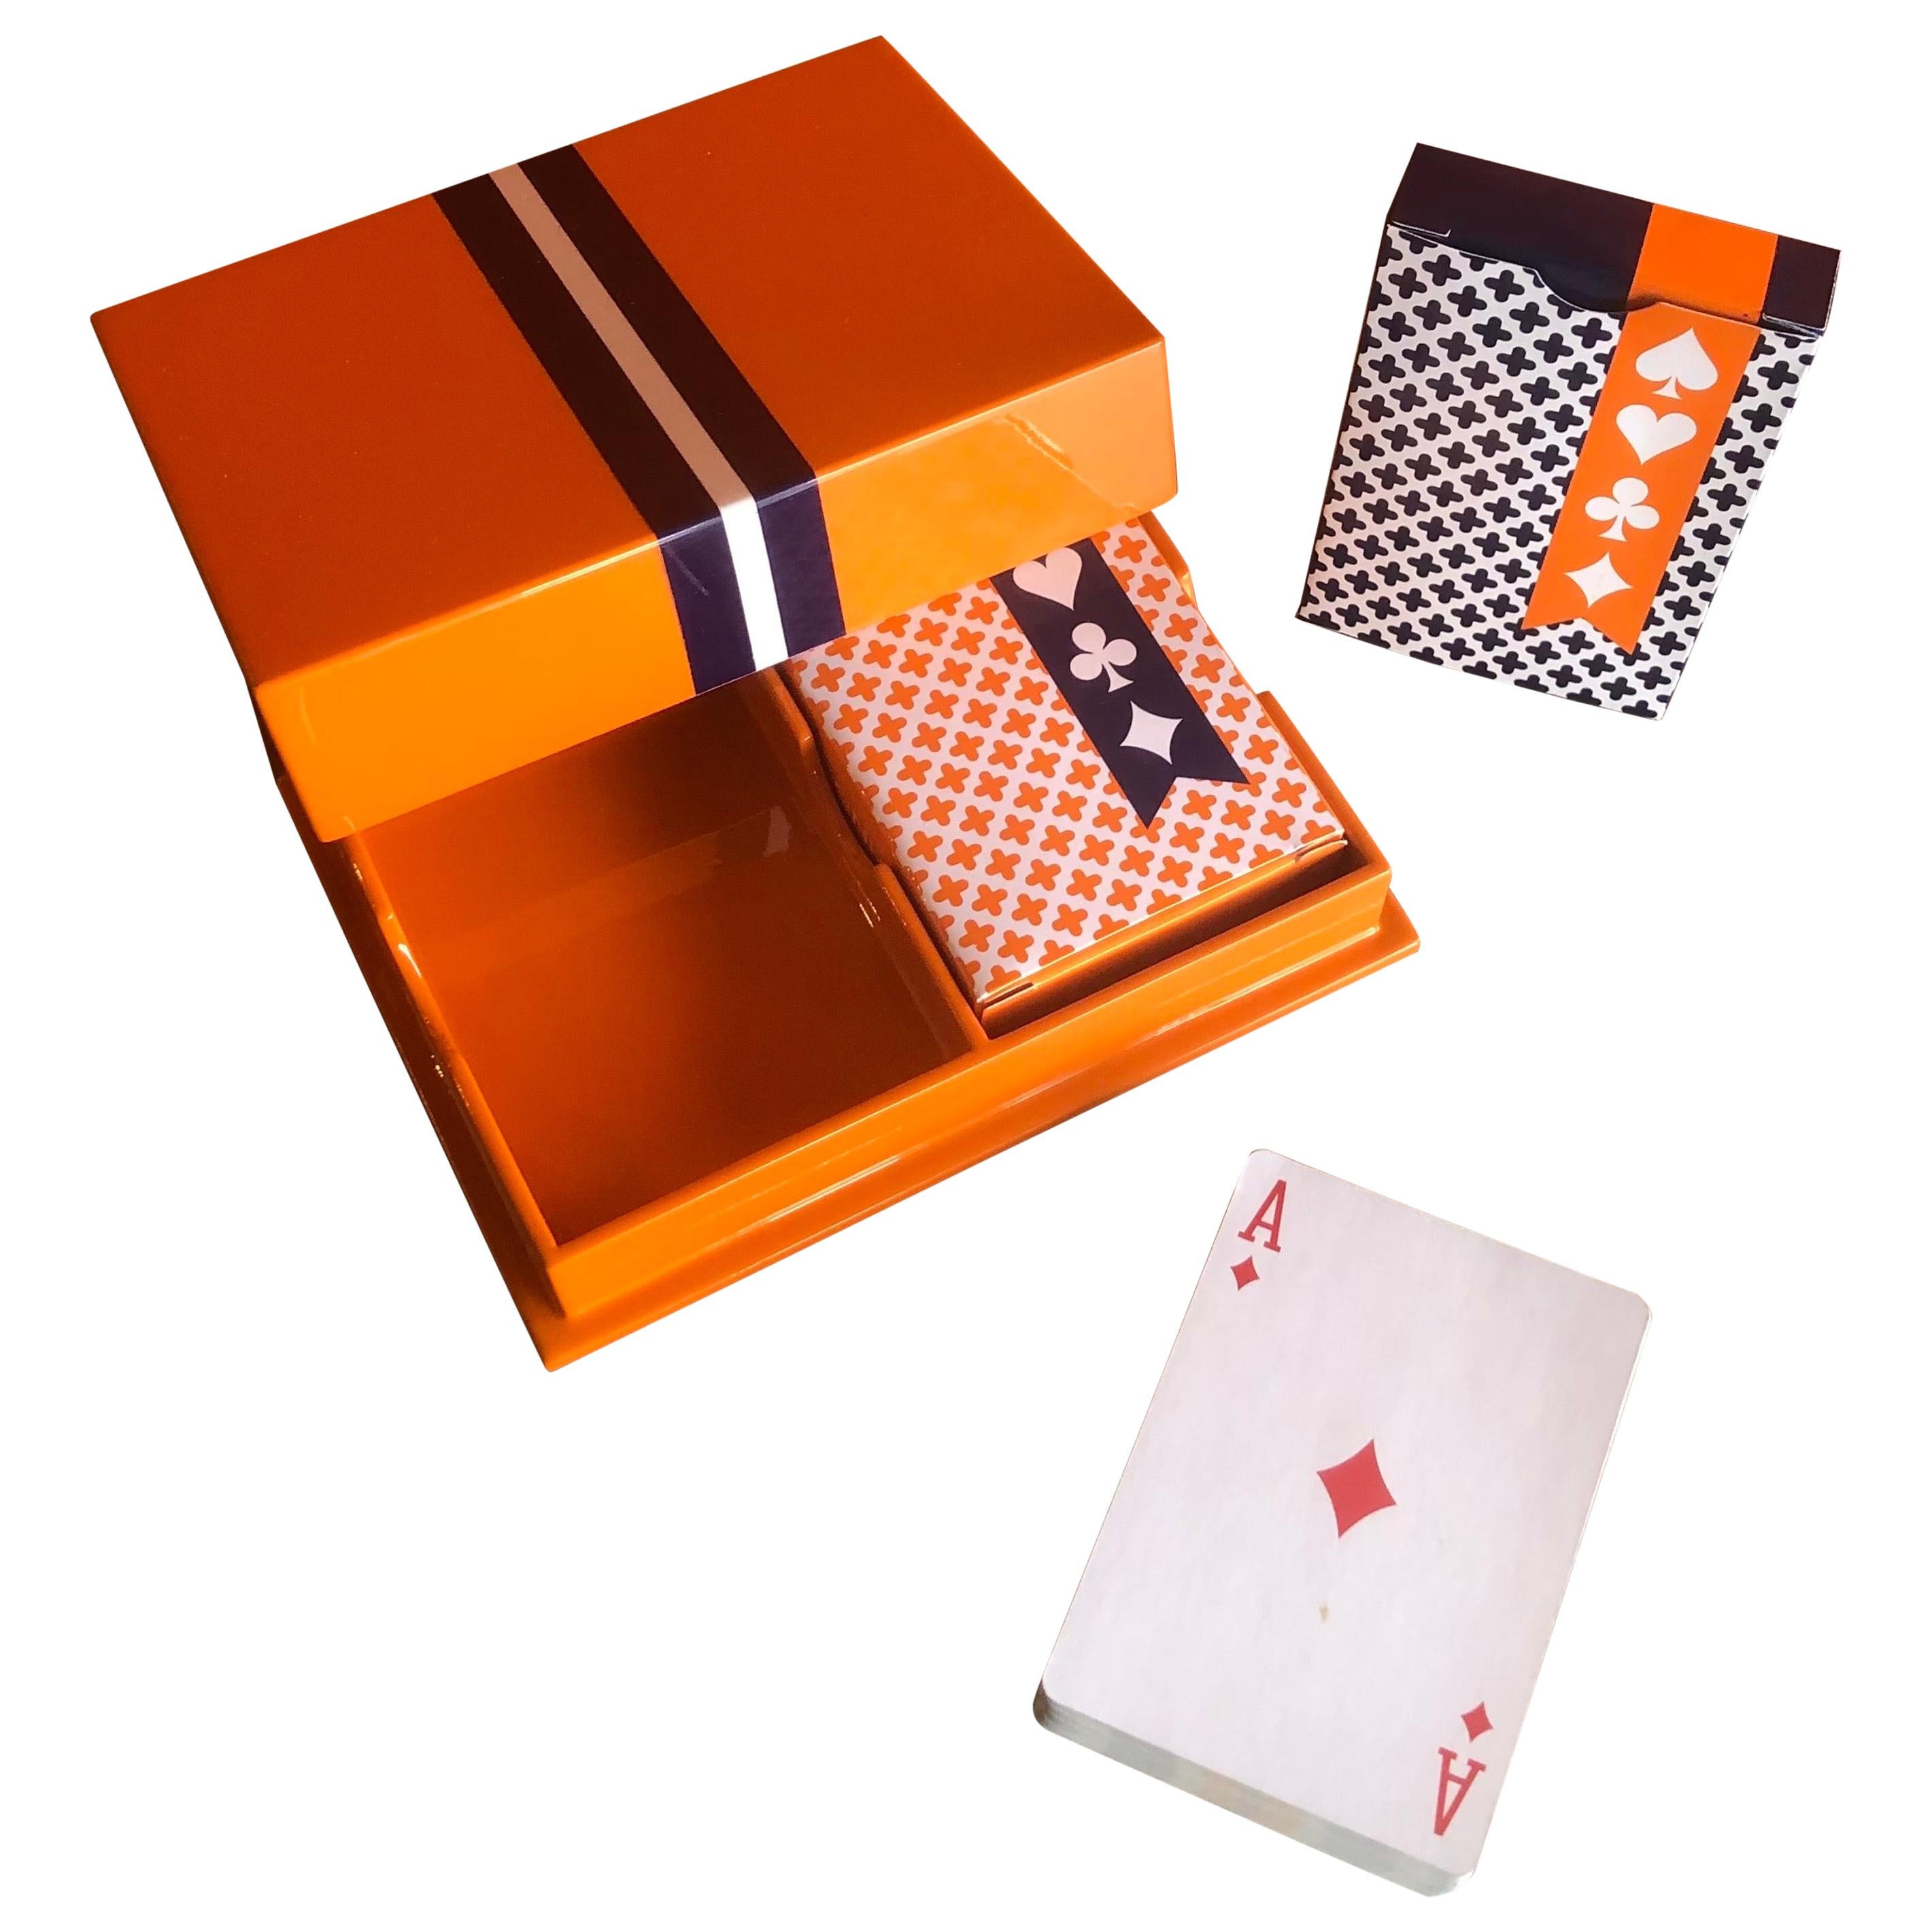 Ensemble de cartes à jouer dans une boîte de Jonathan Adler